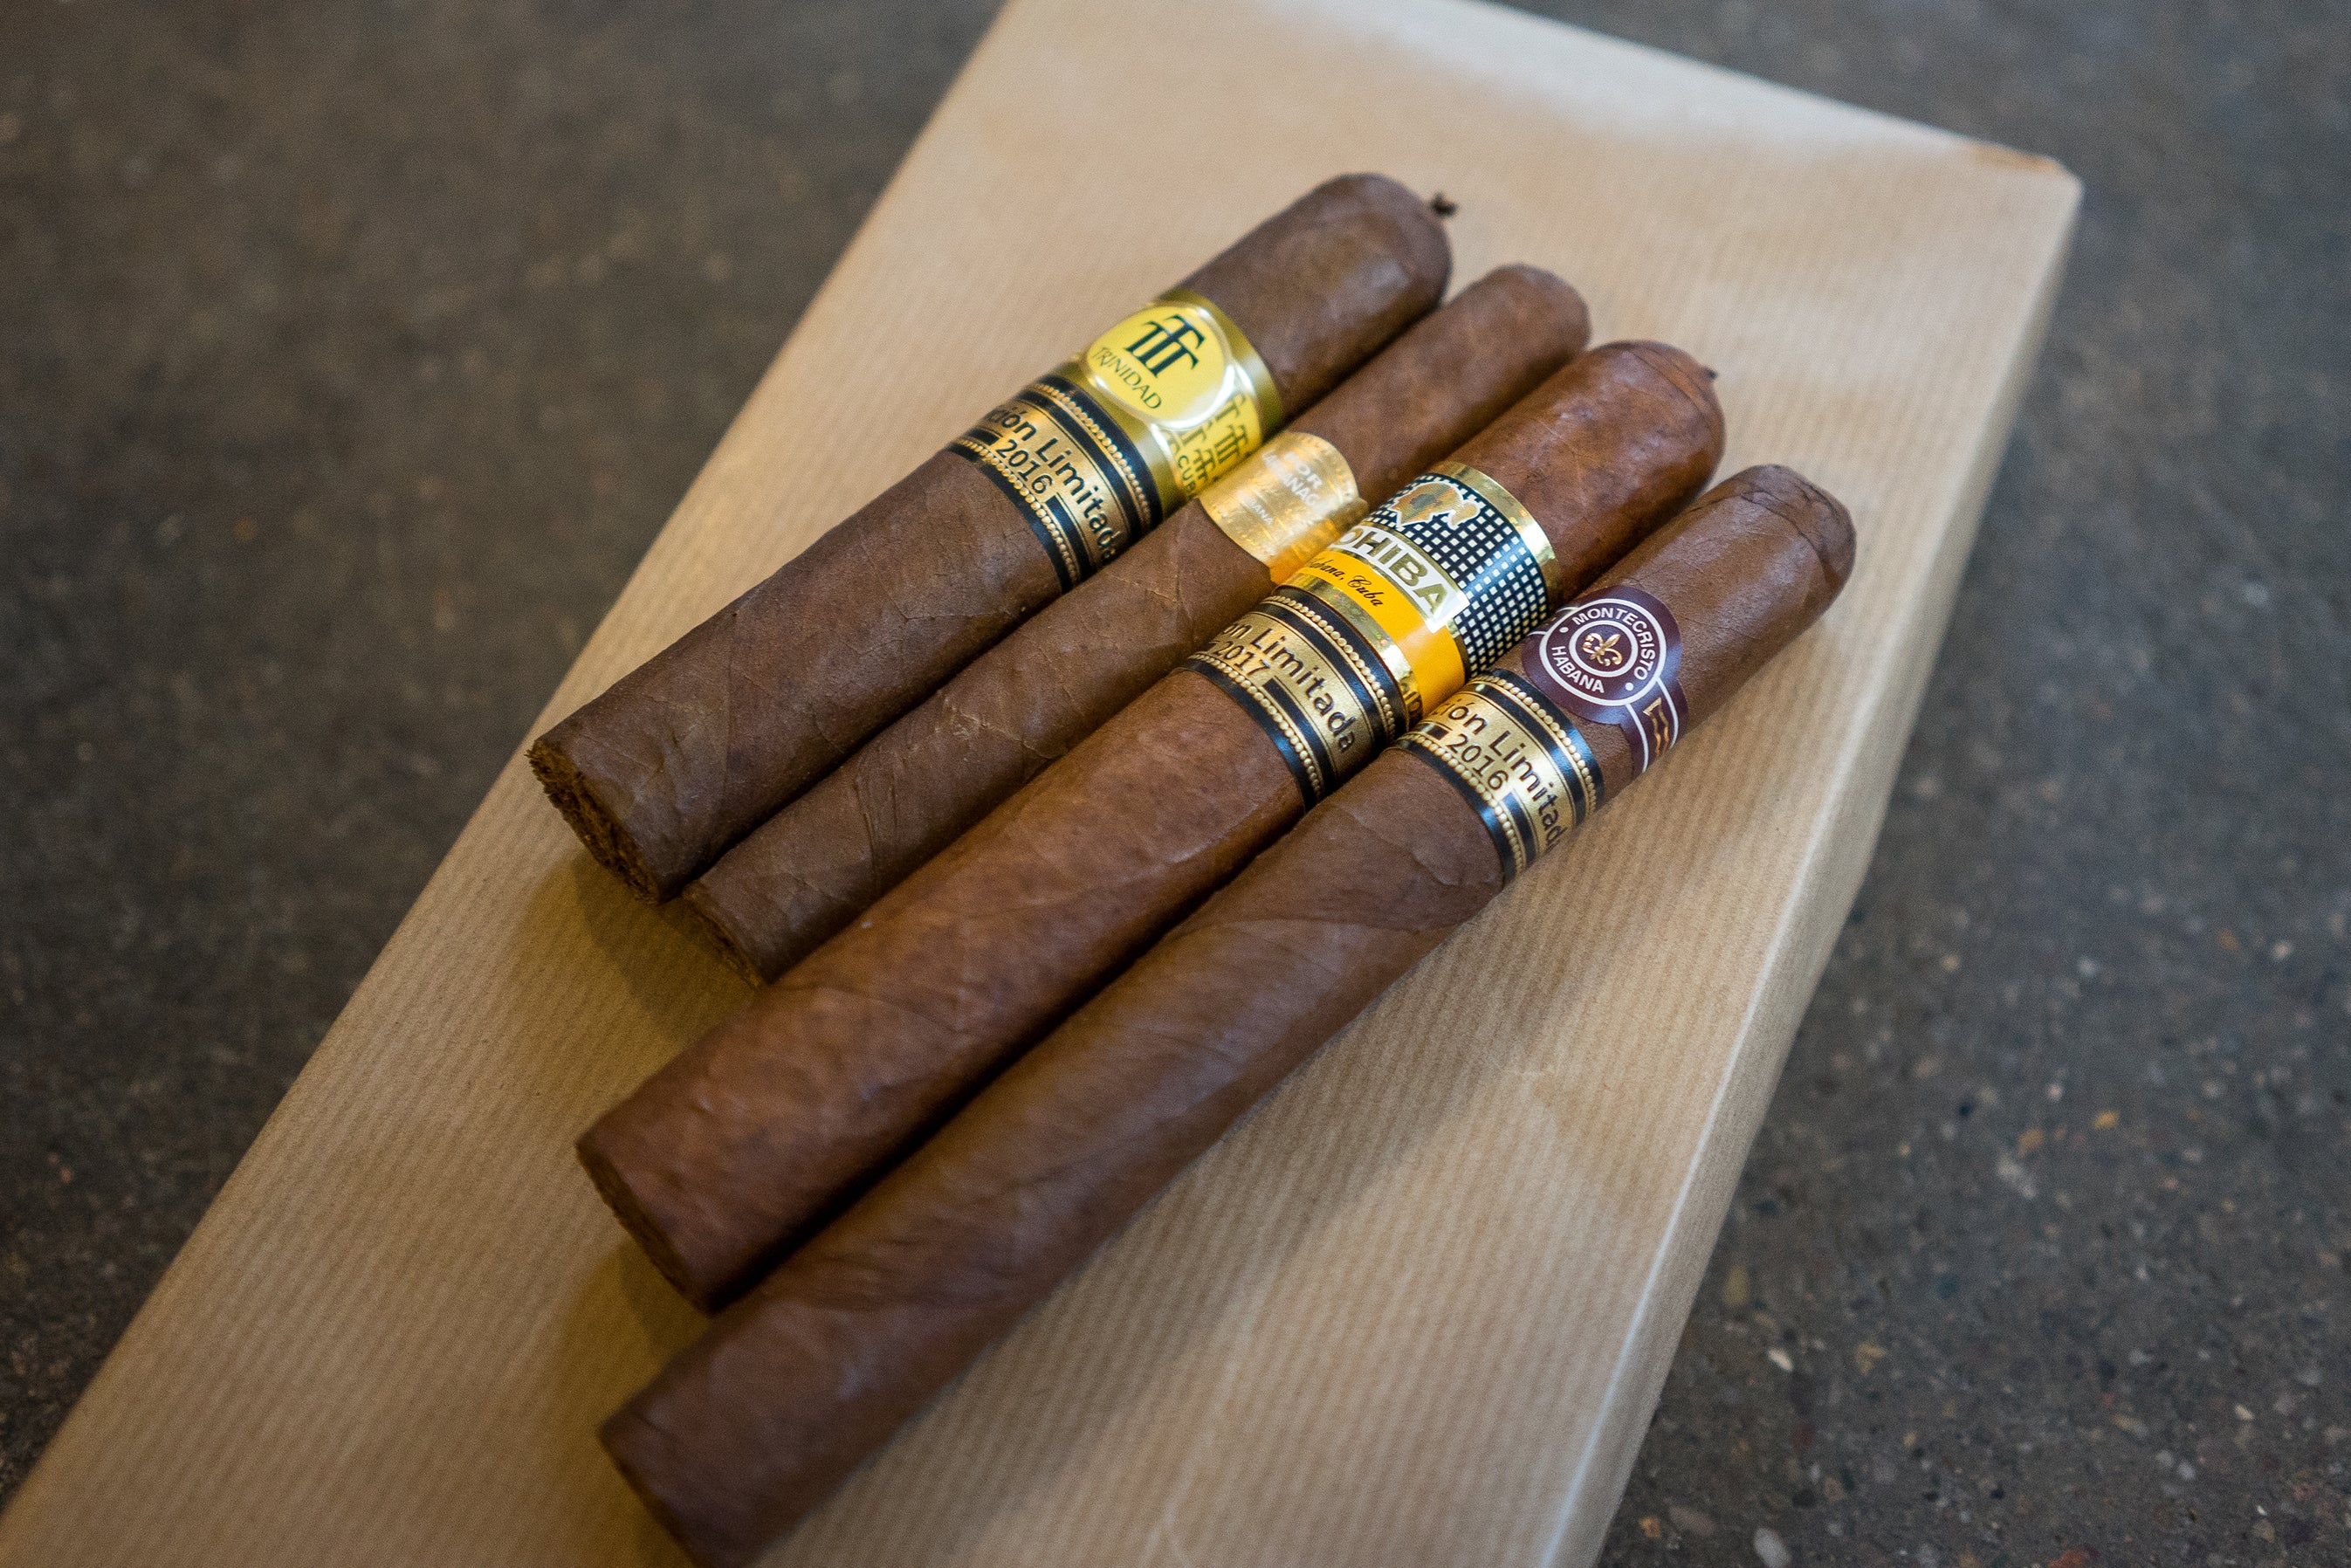 I migliori sigari cubani 5 per investire i tuoi soldi - Sigari EGM